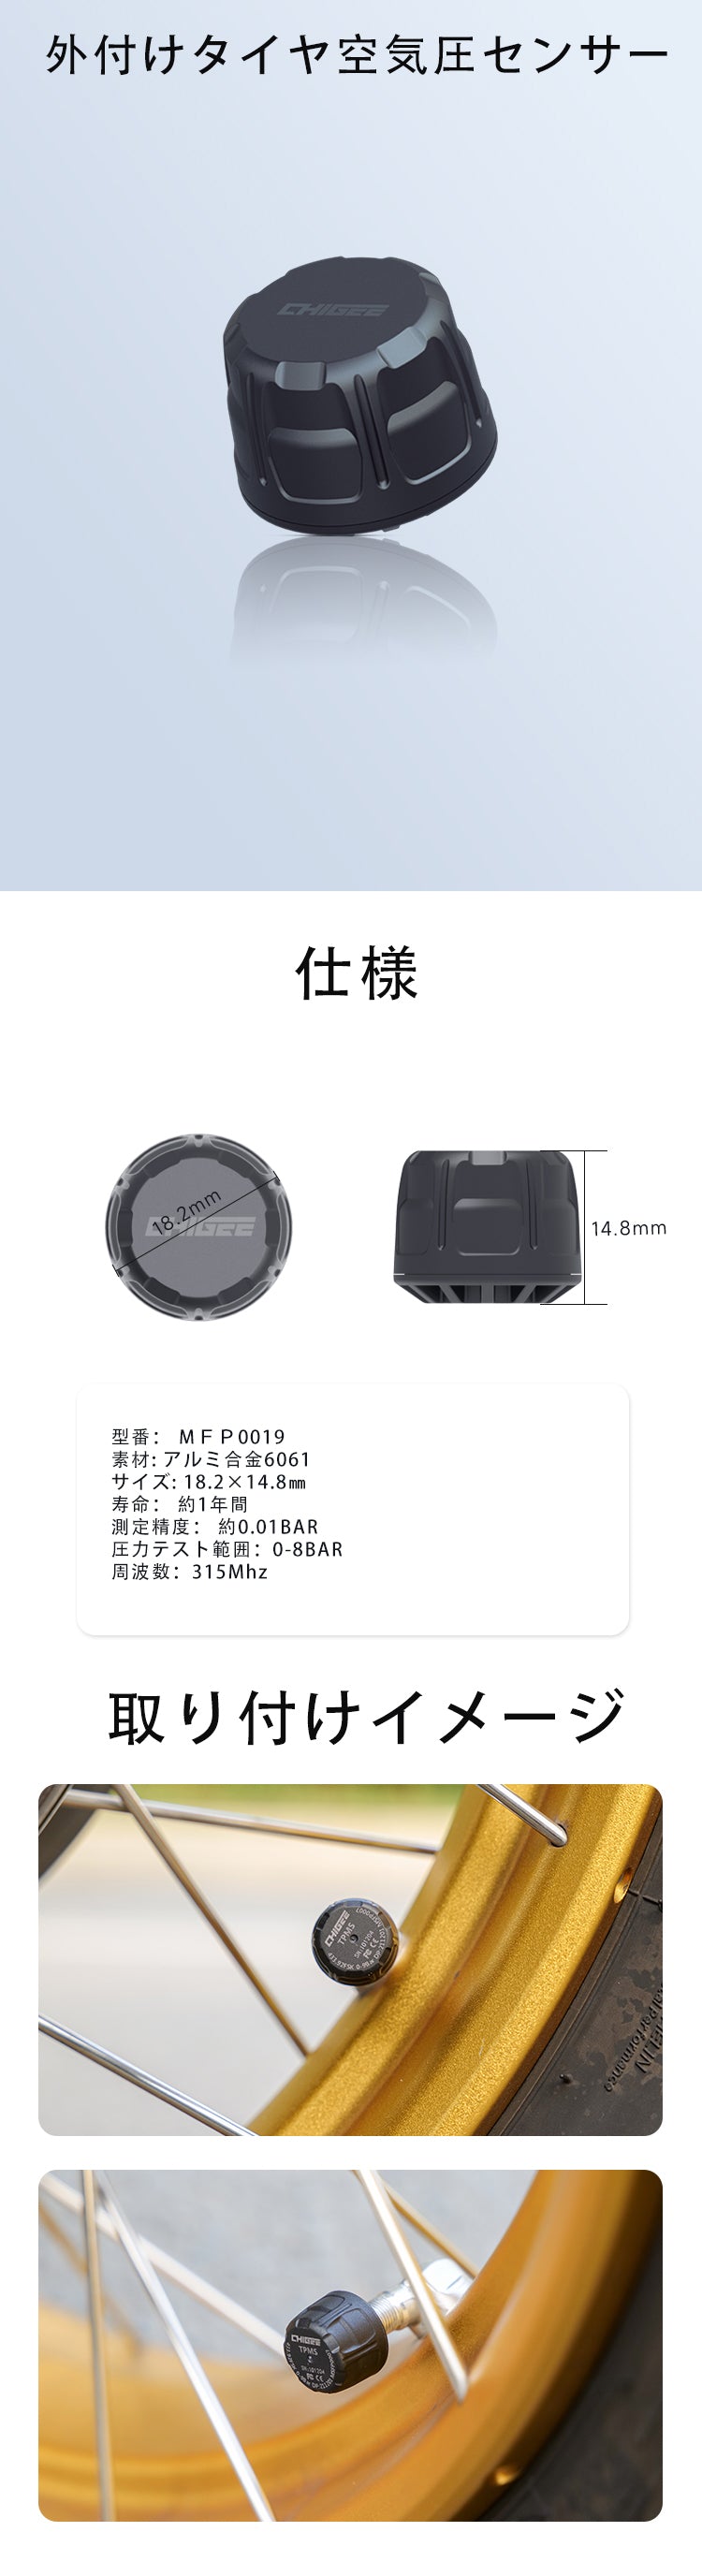 外付け式 バイクタイヤ専用空気圧センサー MFP0019 AIO-5 Lite – AKEEYO